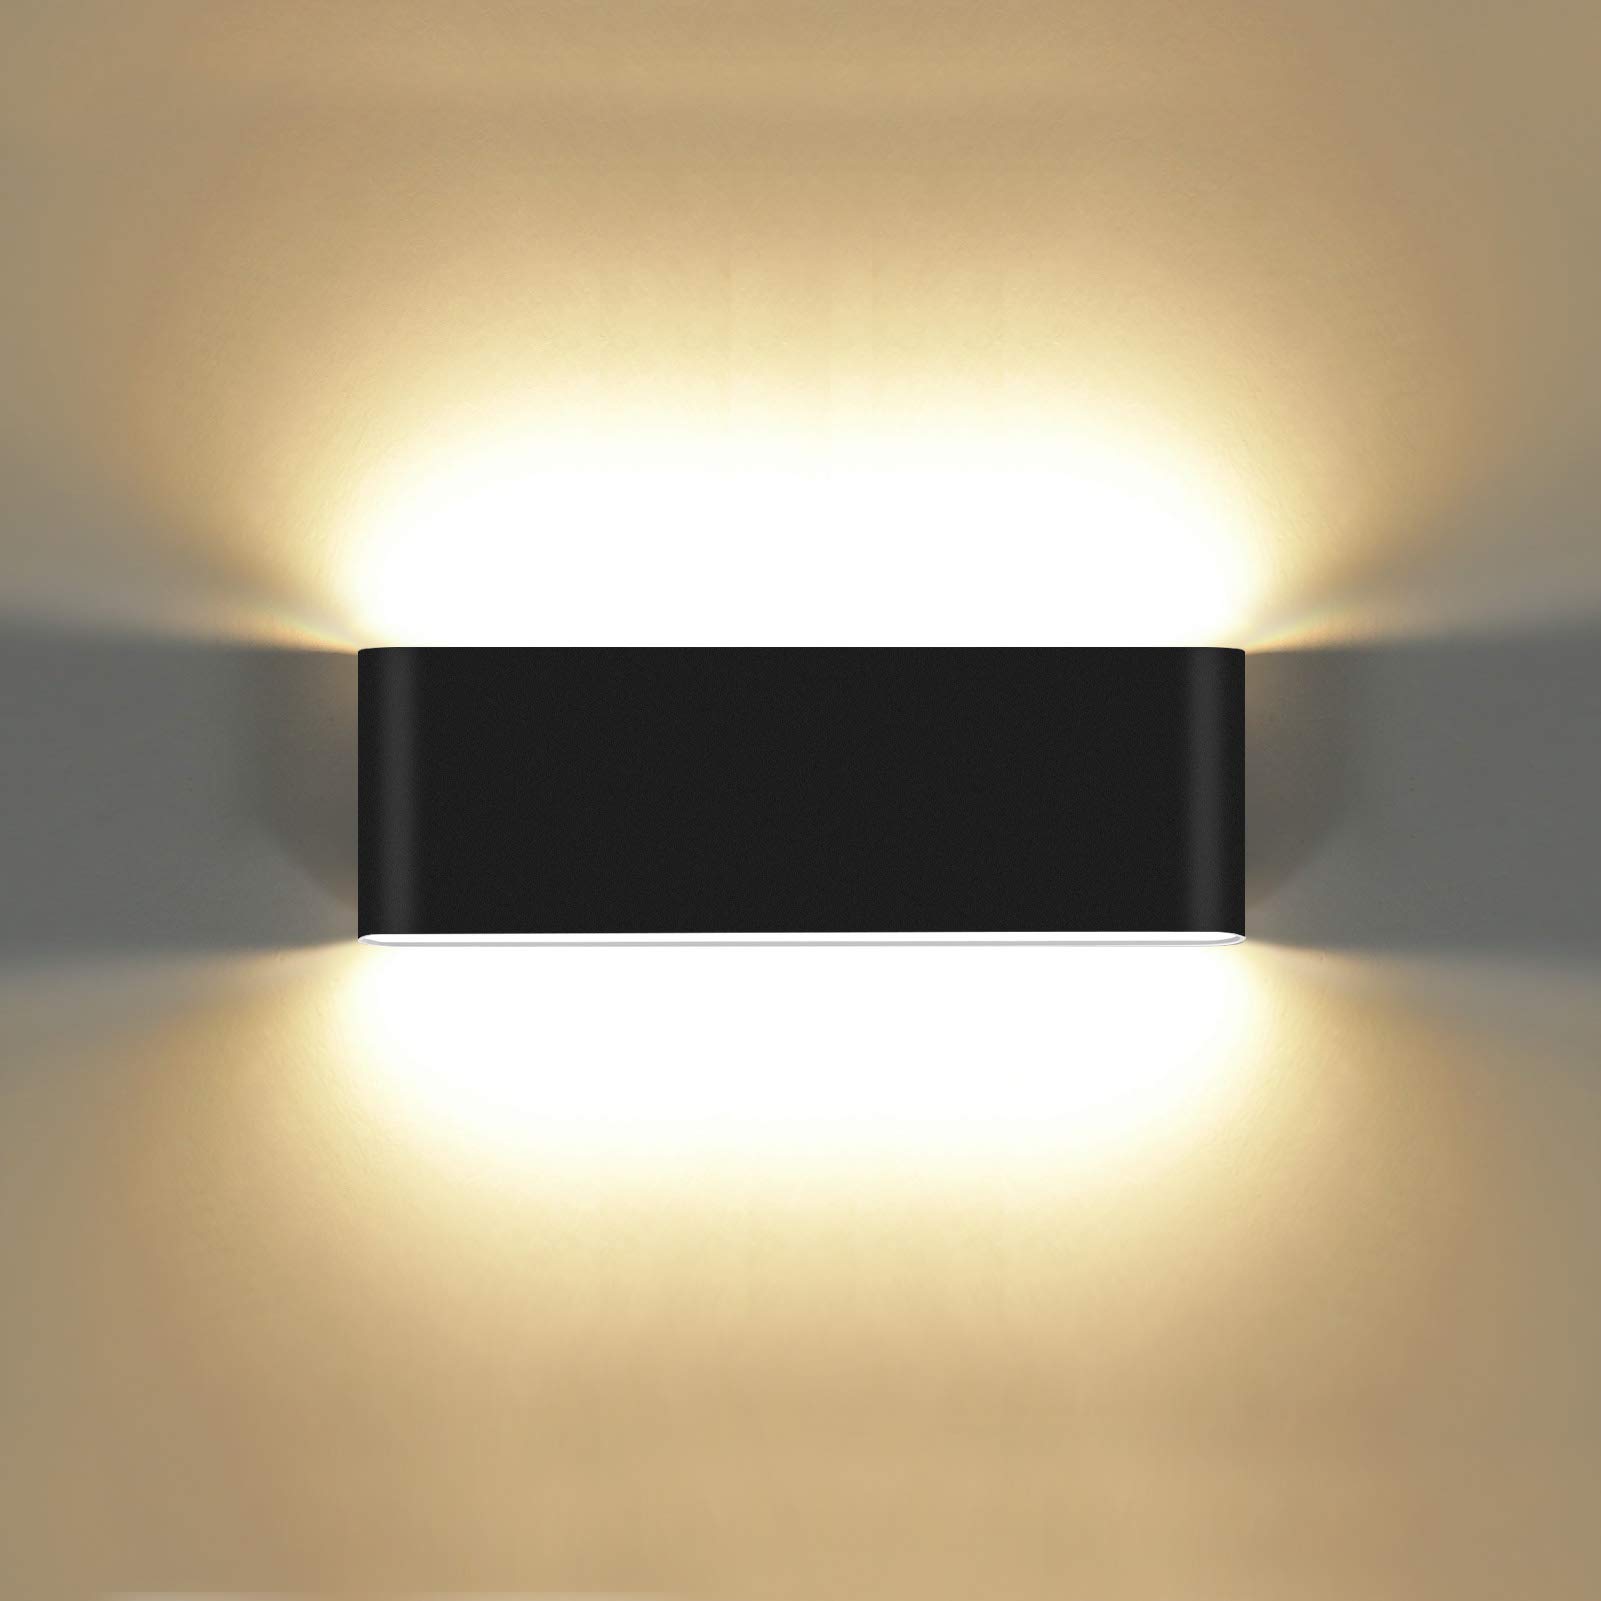 KAWELL 20W Modern Wandlampe LED Wandleuchte Up Down Aluminium Wandbeleuchtung Wasserdicht IP65 Innen Außen für Schlafzimmer Badezimmer Wohnzimmer Flur Treppen Korridor, Schwarz 3000K